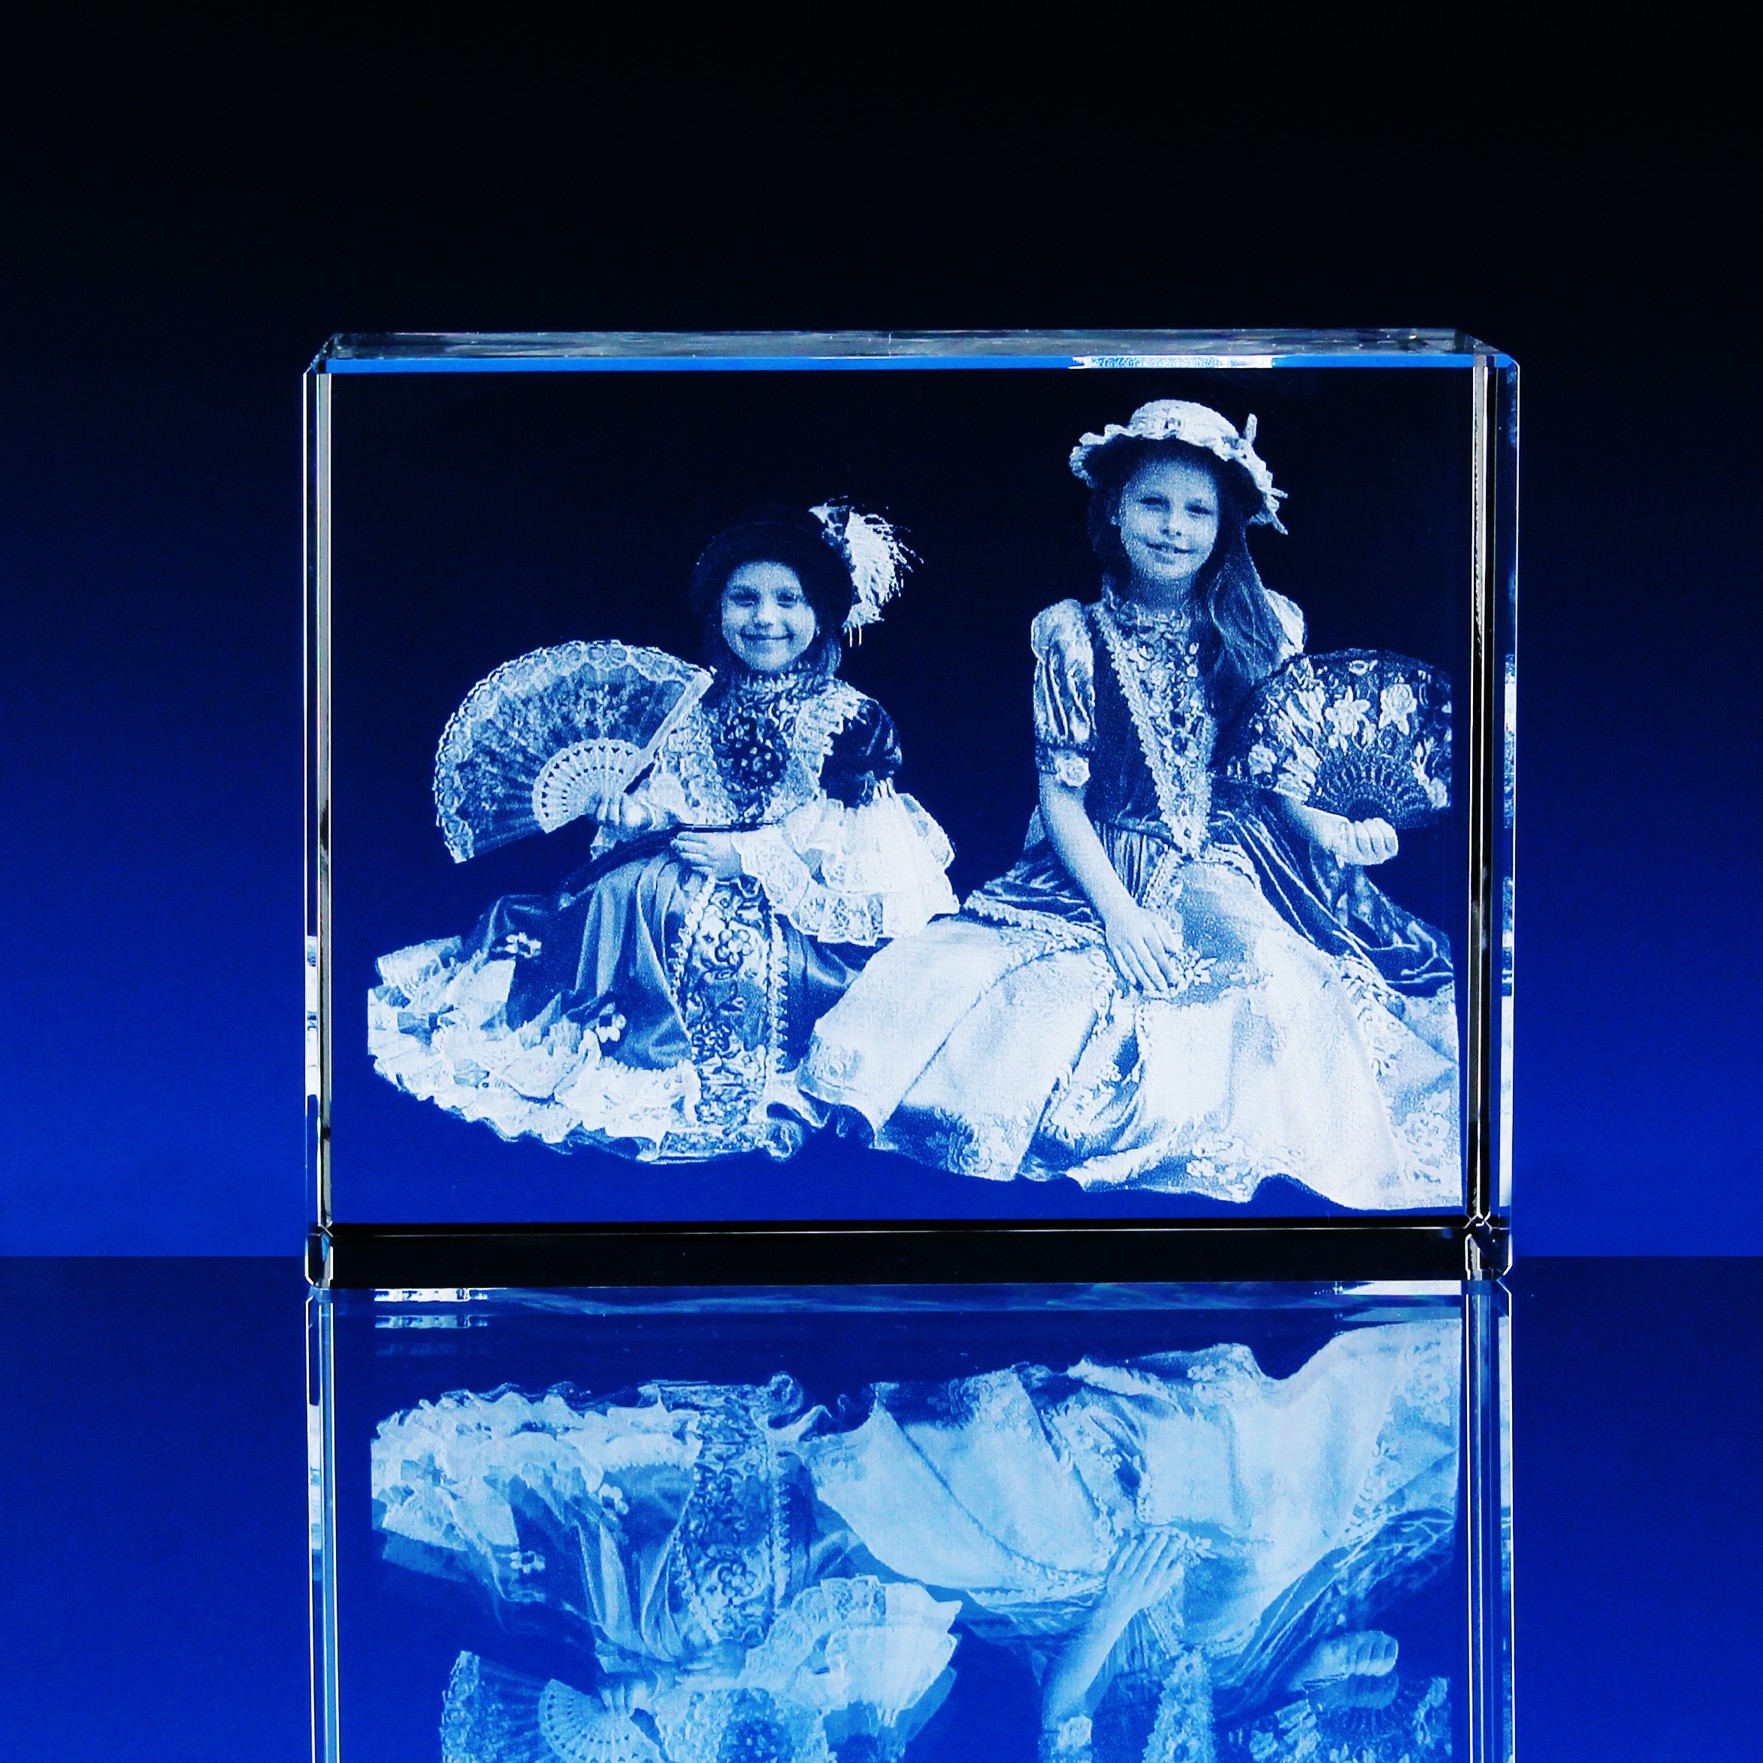 3D Laserovaná fotografie do skla - Portrét v kvádru 180x120x80 mm (P309c)